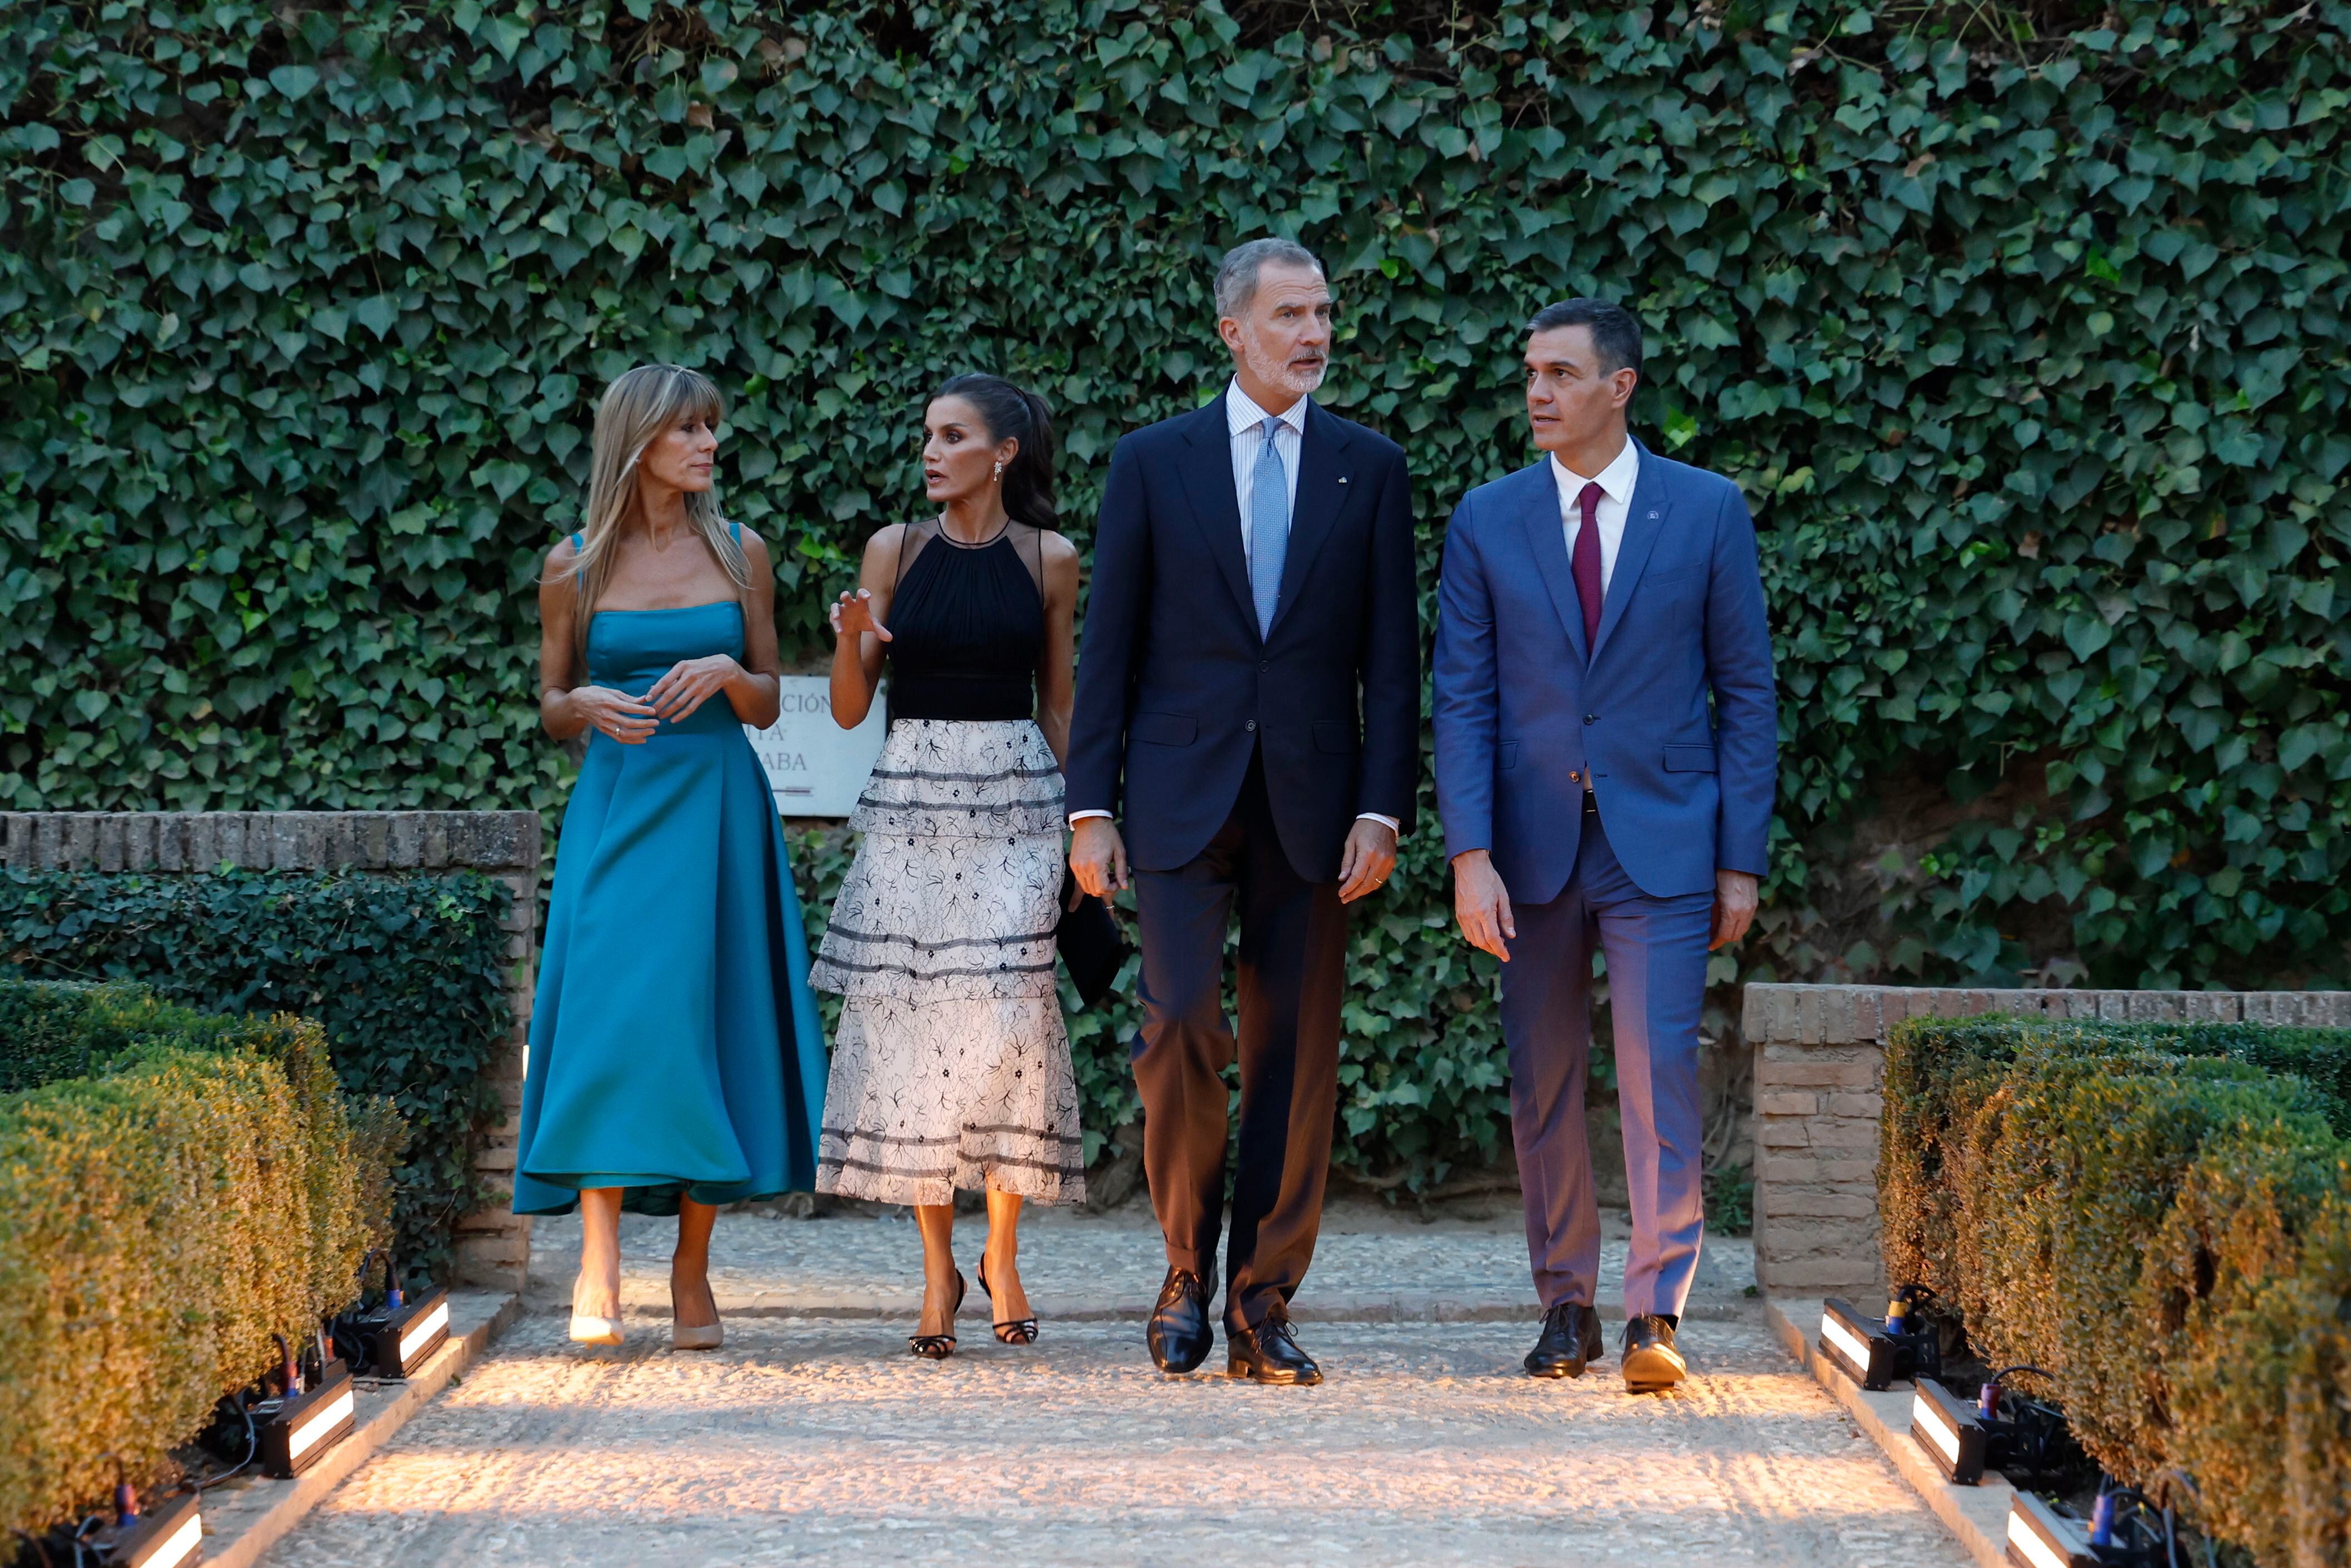 Los Reyes de España, Felipe y Letizia, junto al presidente del Gobierno en funciones, Pedro Sánchez, y su esposa Begoña Gómez, pasean por los jardines de la Alhambra, donde ofrecen una cena a los mandatarios europeos, dentro de la III Cumbre de la Comunidad Política Europea.